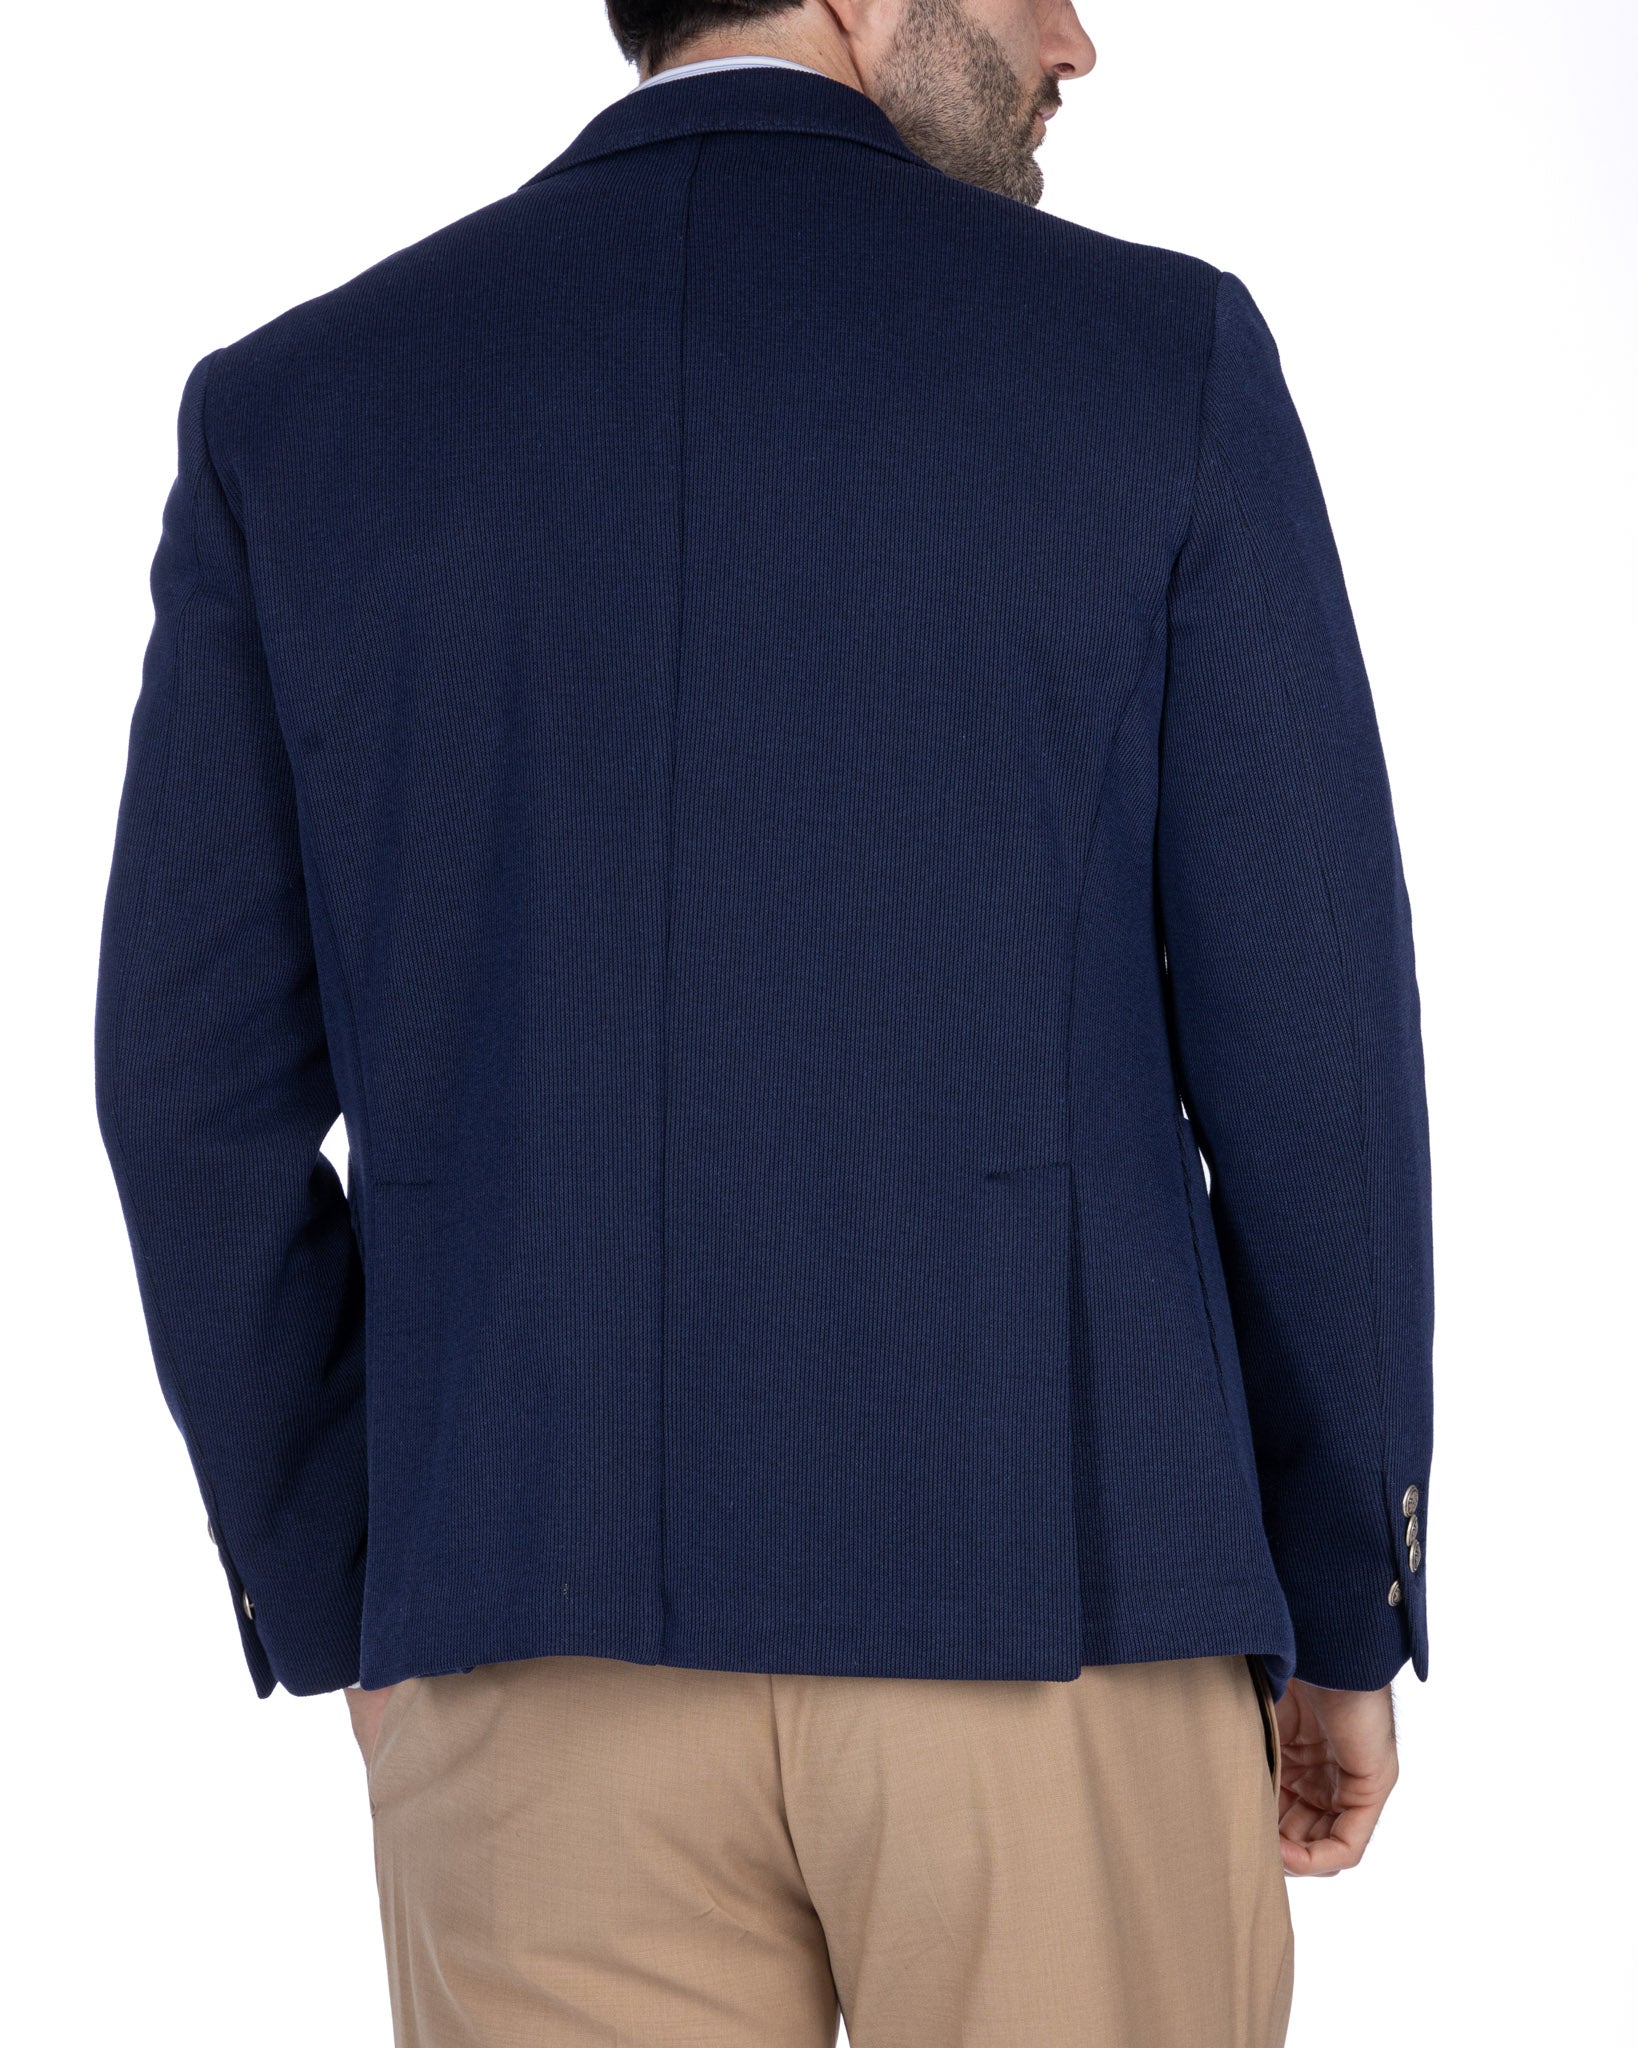 Adolfo - giacca blu doppiopetto in maglina